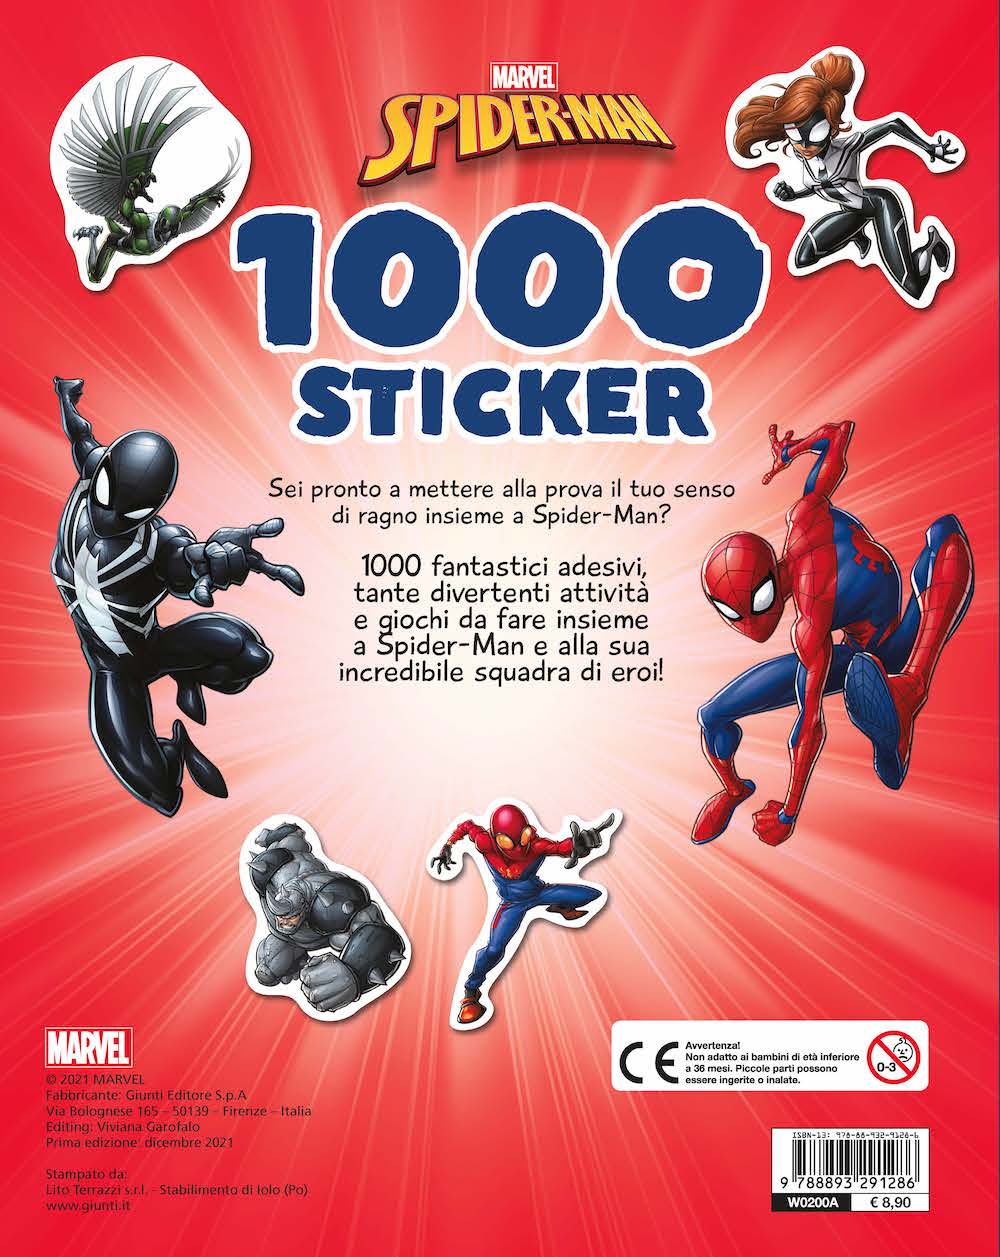 Spiderman 1000 sticker